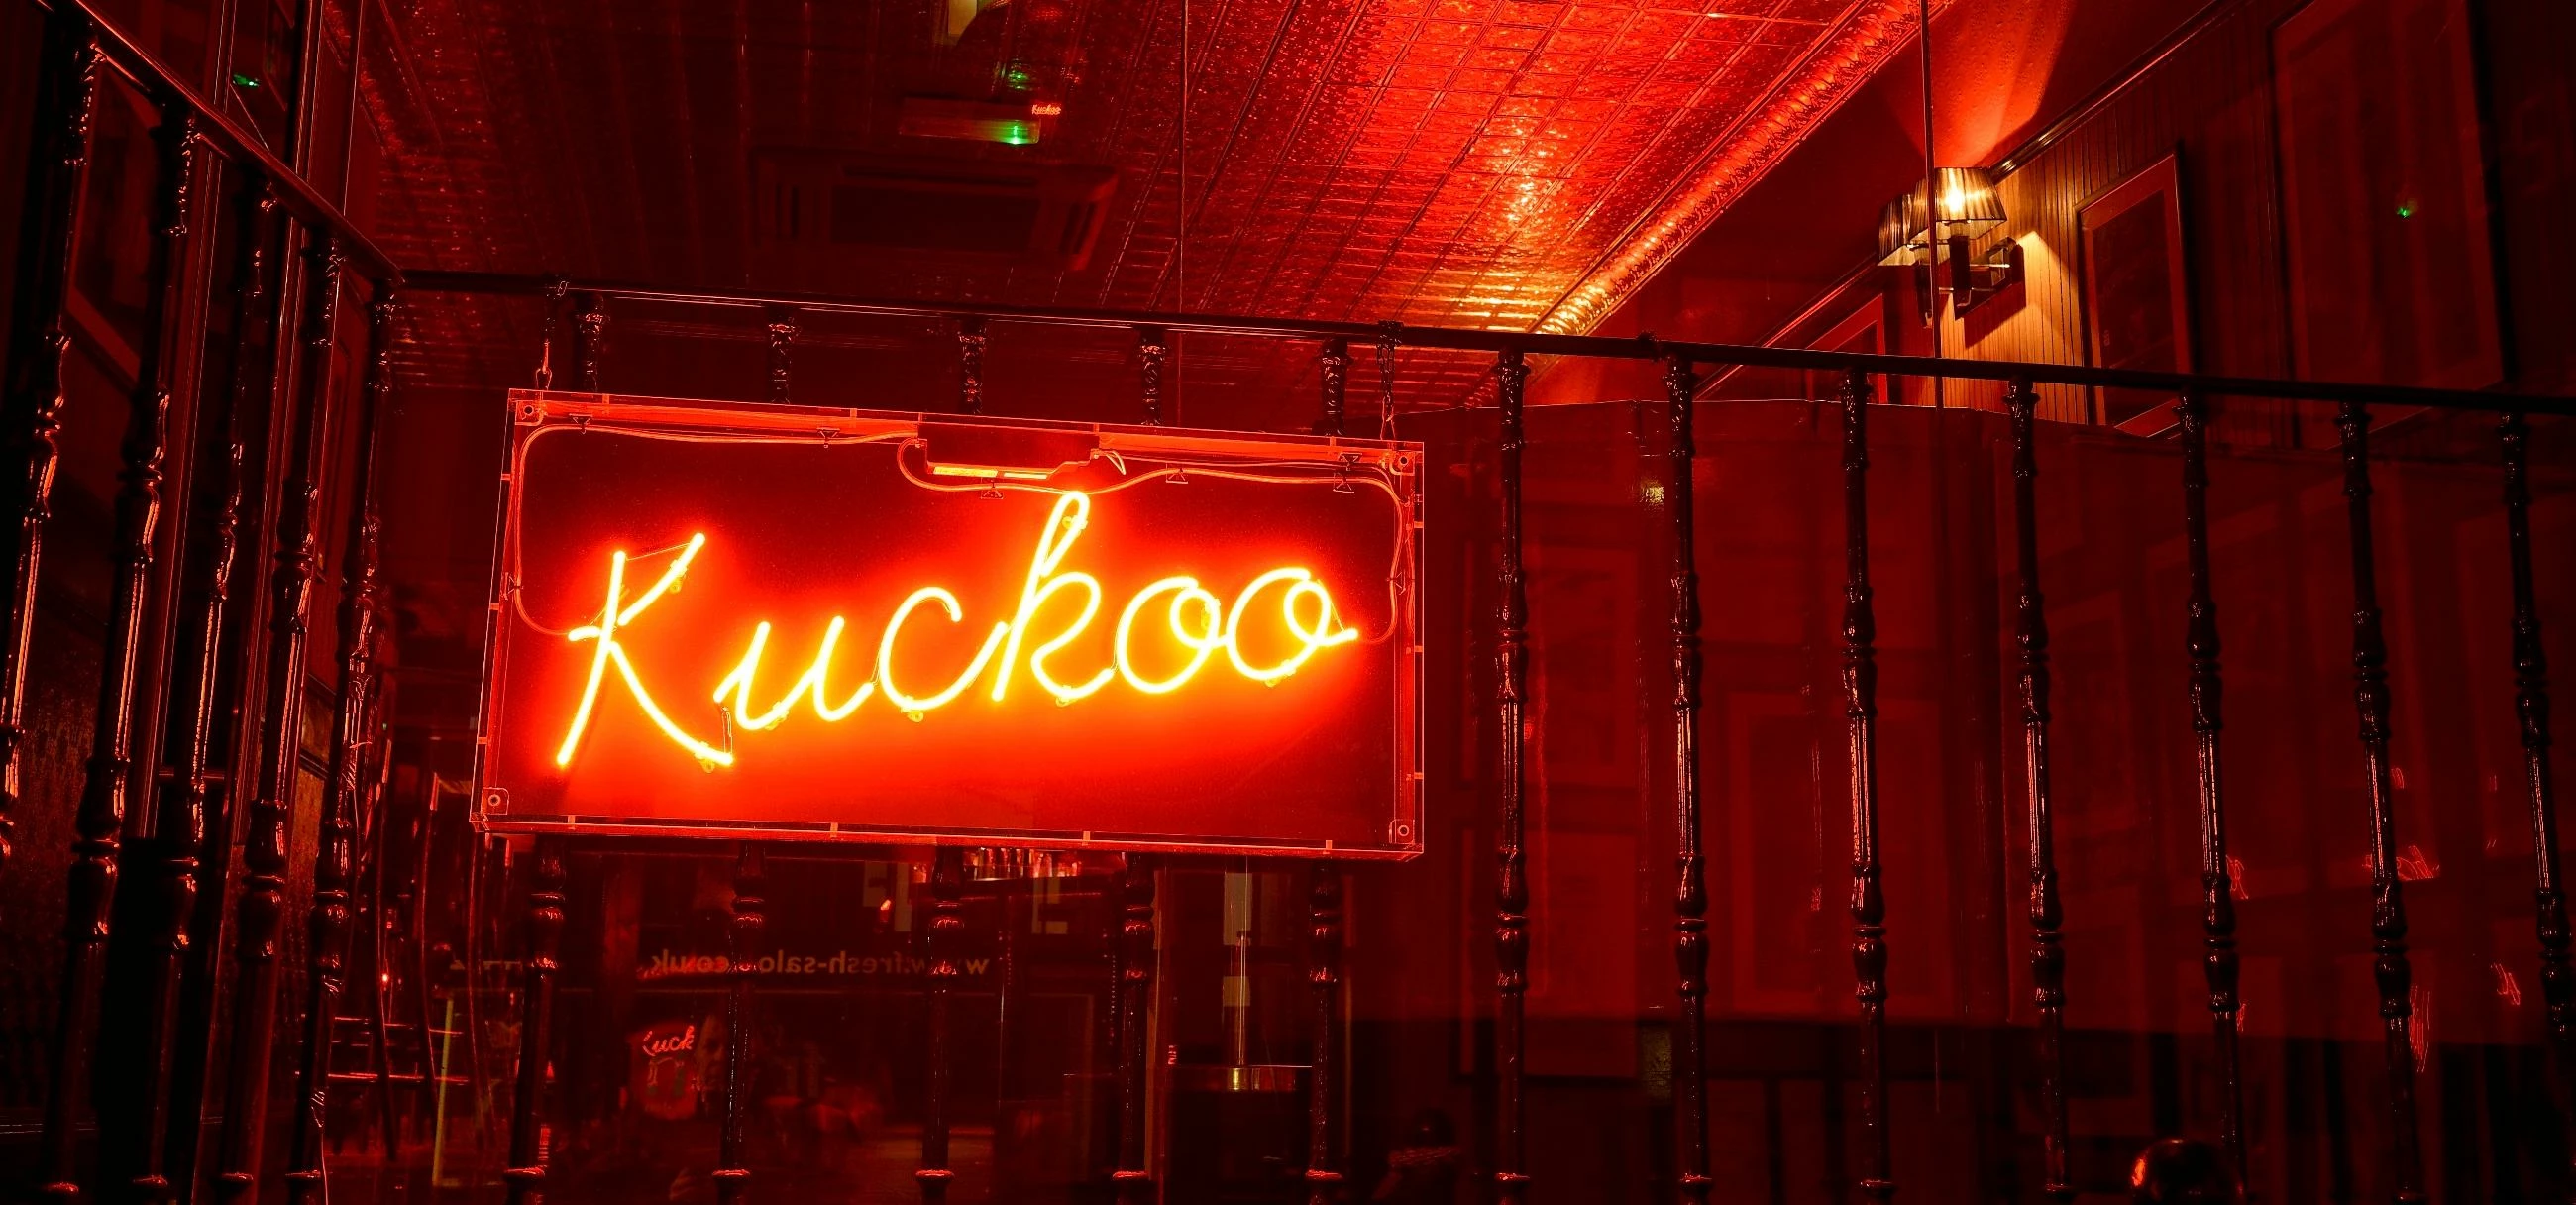 Kuckoo Chester Undergoes £50K Refurbishment